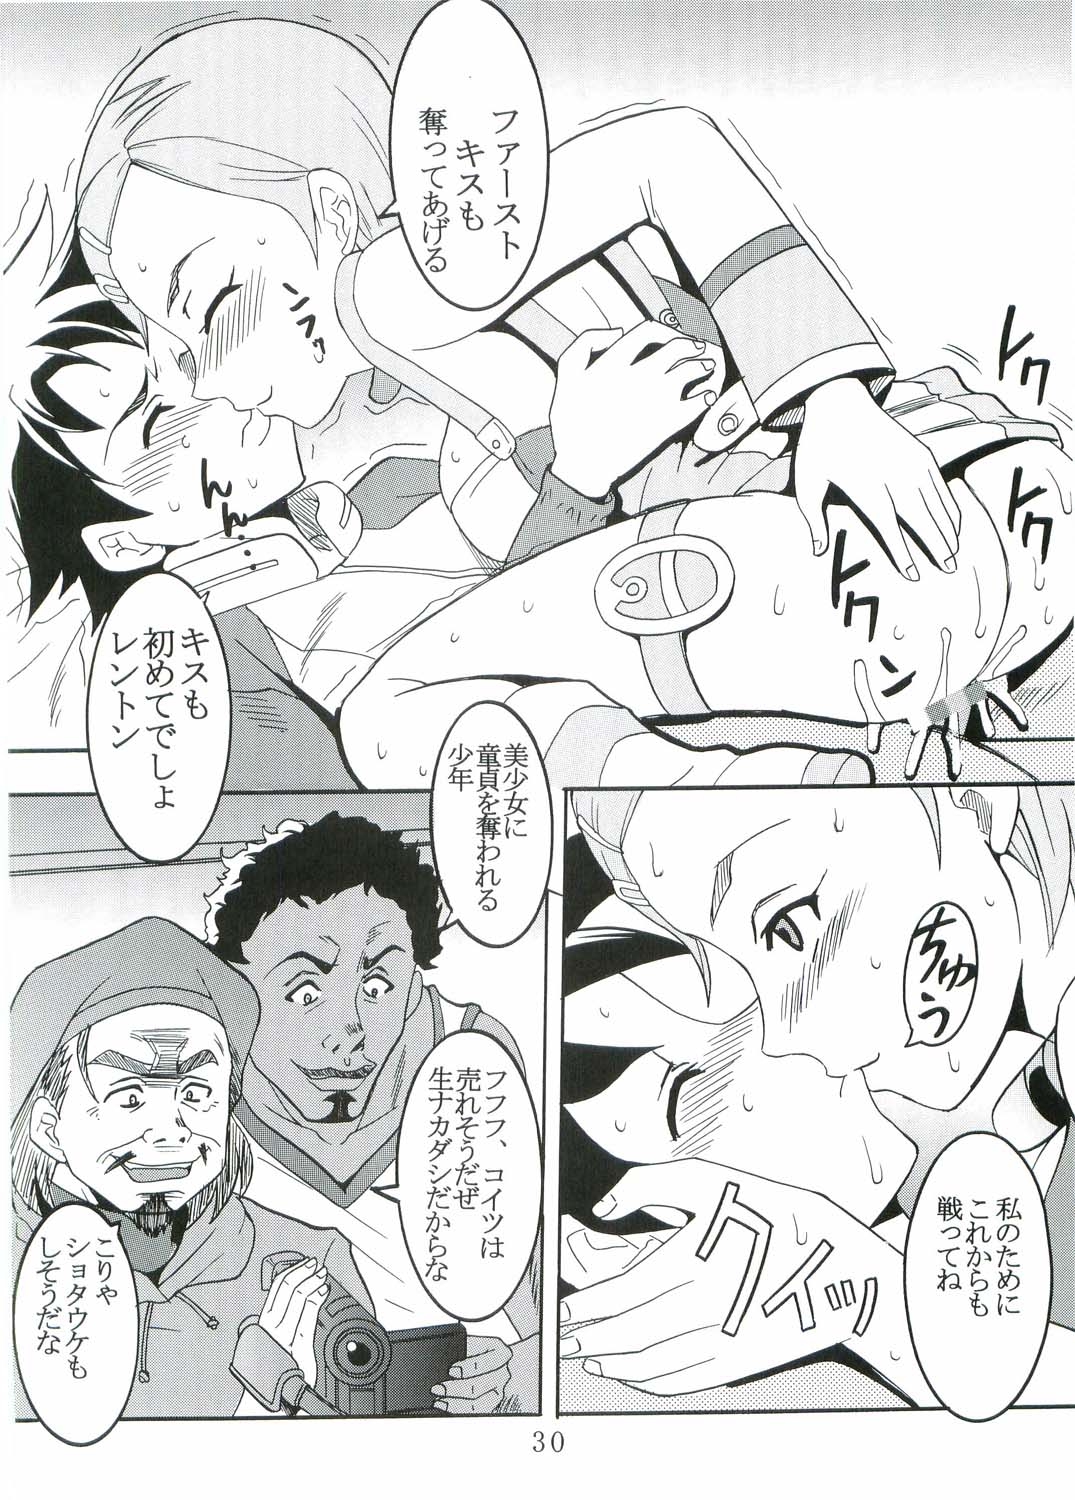 [St. Rio (Kitty, Kouenji Rei)] Ura ray-out (Eureka seveN) page 31 full